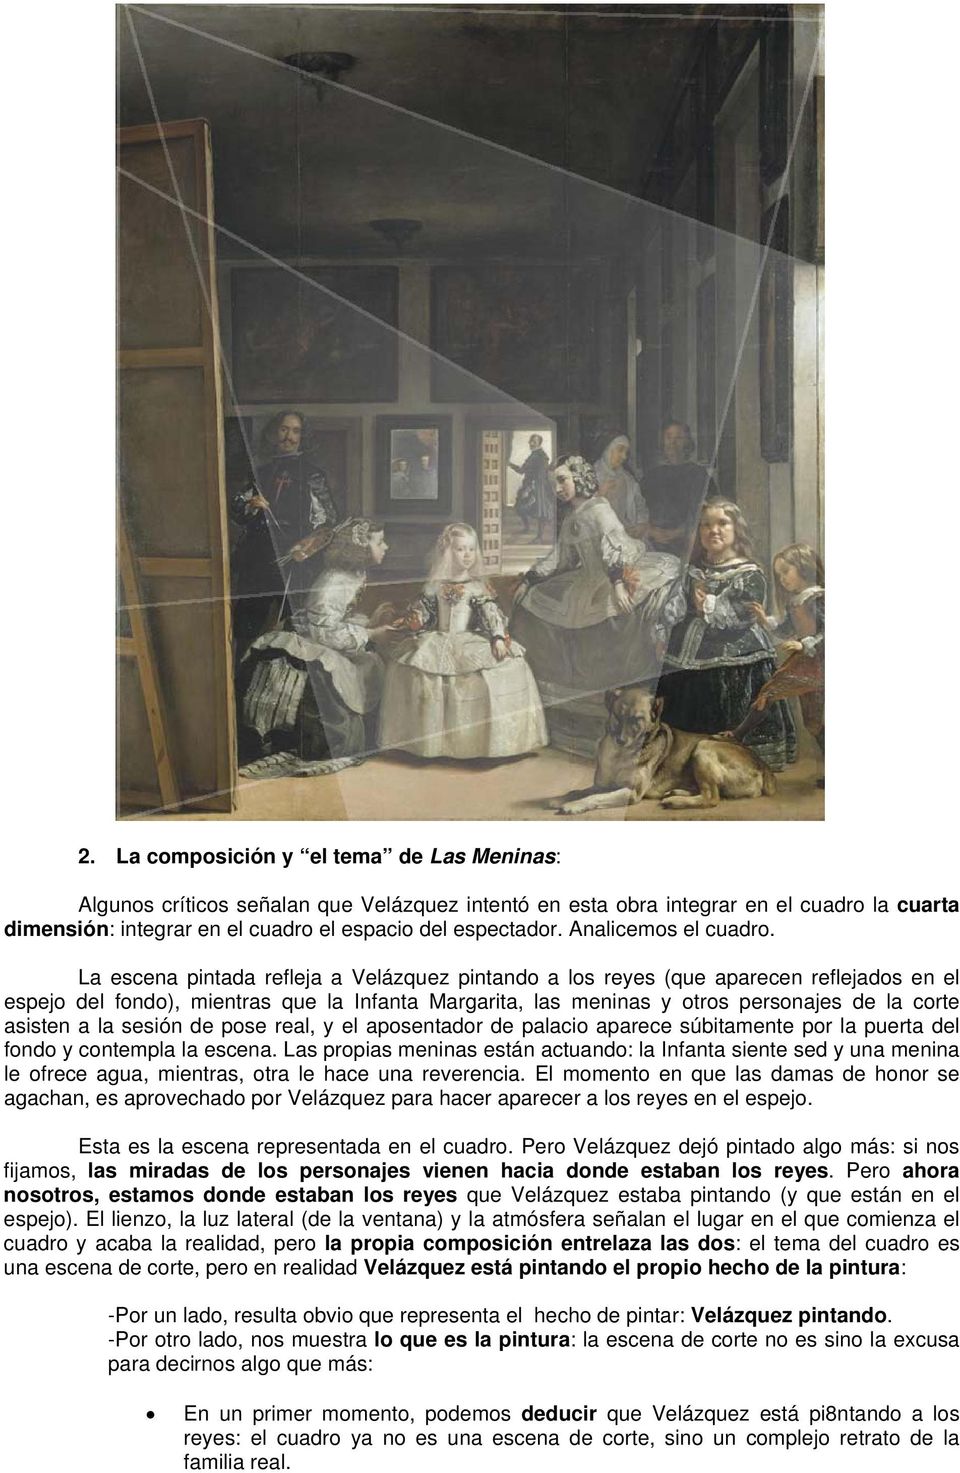 La escena pintada refleja a Velázquez pintando a los reyes (que aparecen reflejados en el espejo del fondo), mientras que la Infanta Margarita, las meninas y otros personajes de la corte asisten a la